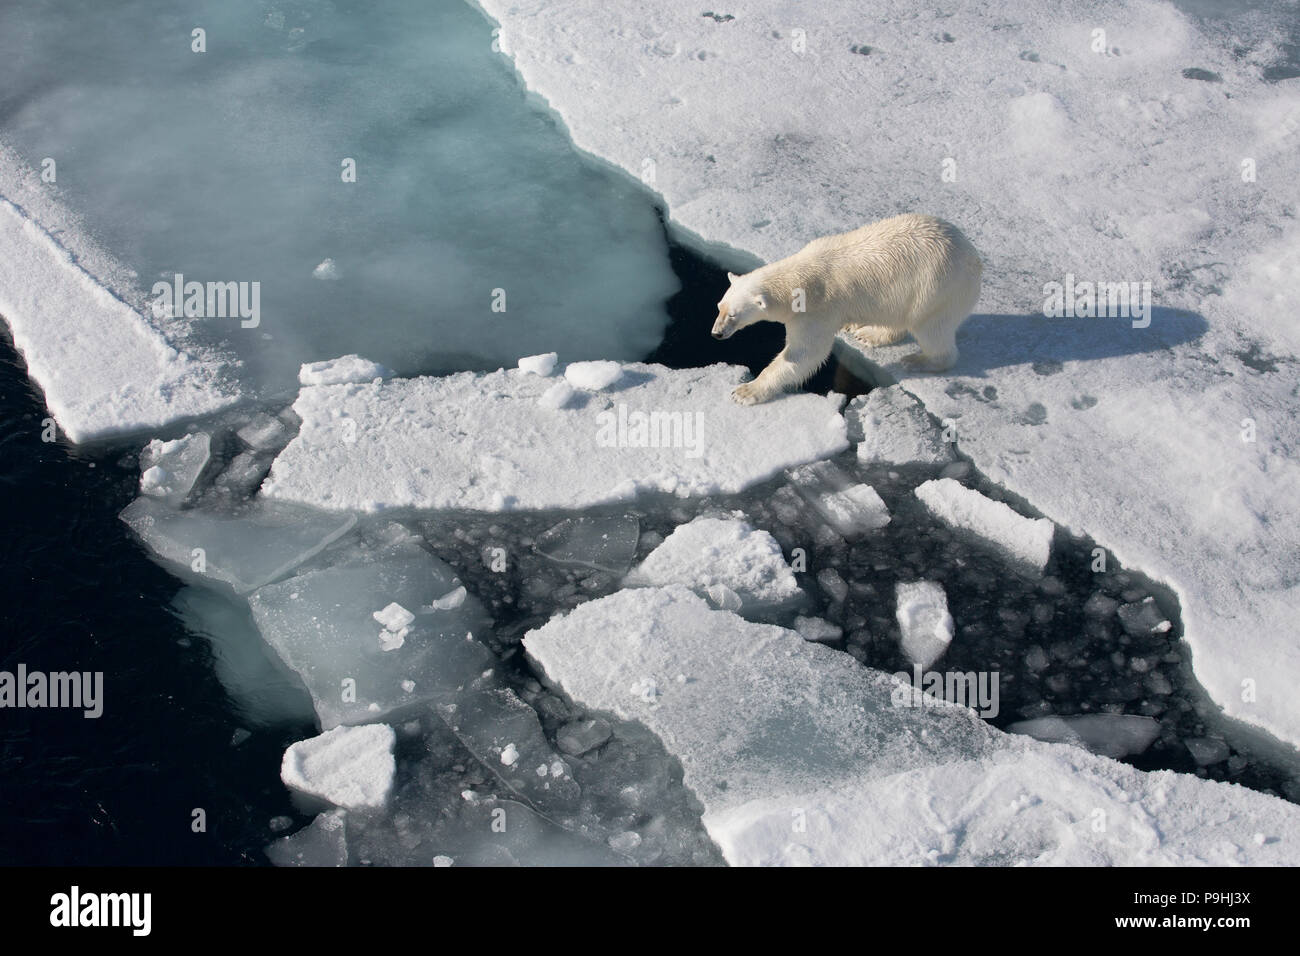 La marche de l'ours polaire sur la glace de mer Banque D'Images